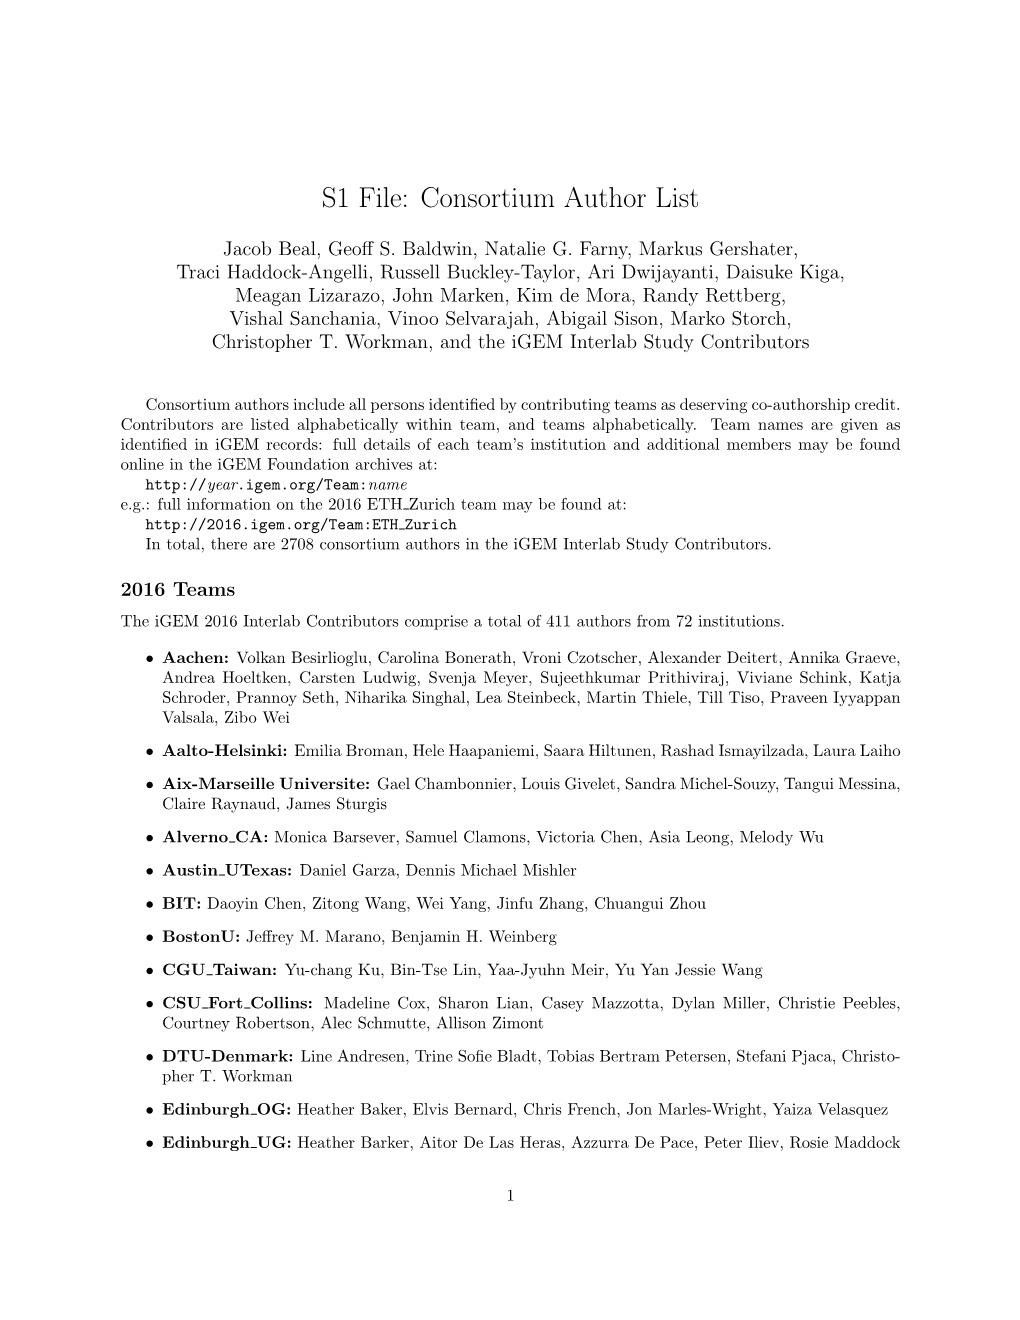 PDF (S1 File. Consortium Author List. List of 2708 Additional Consortium